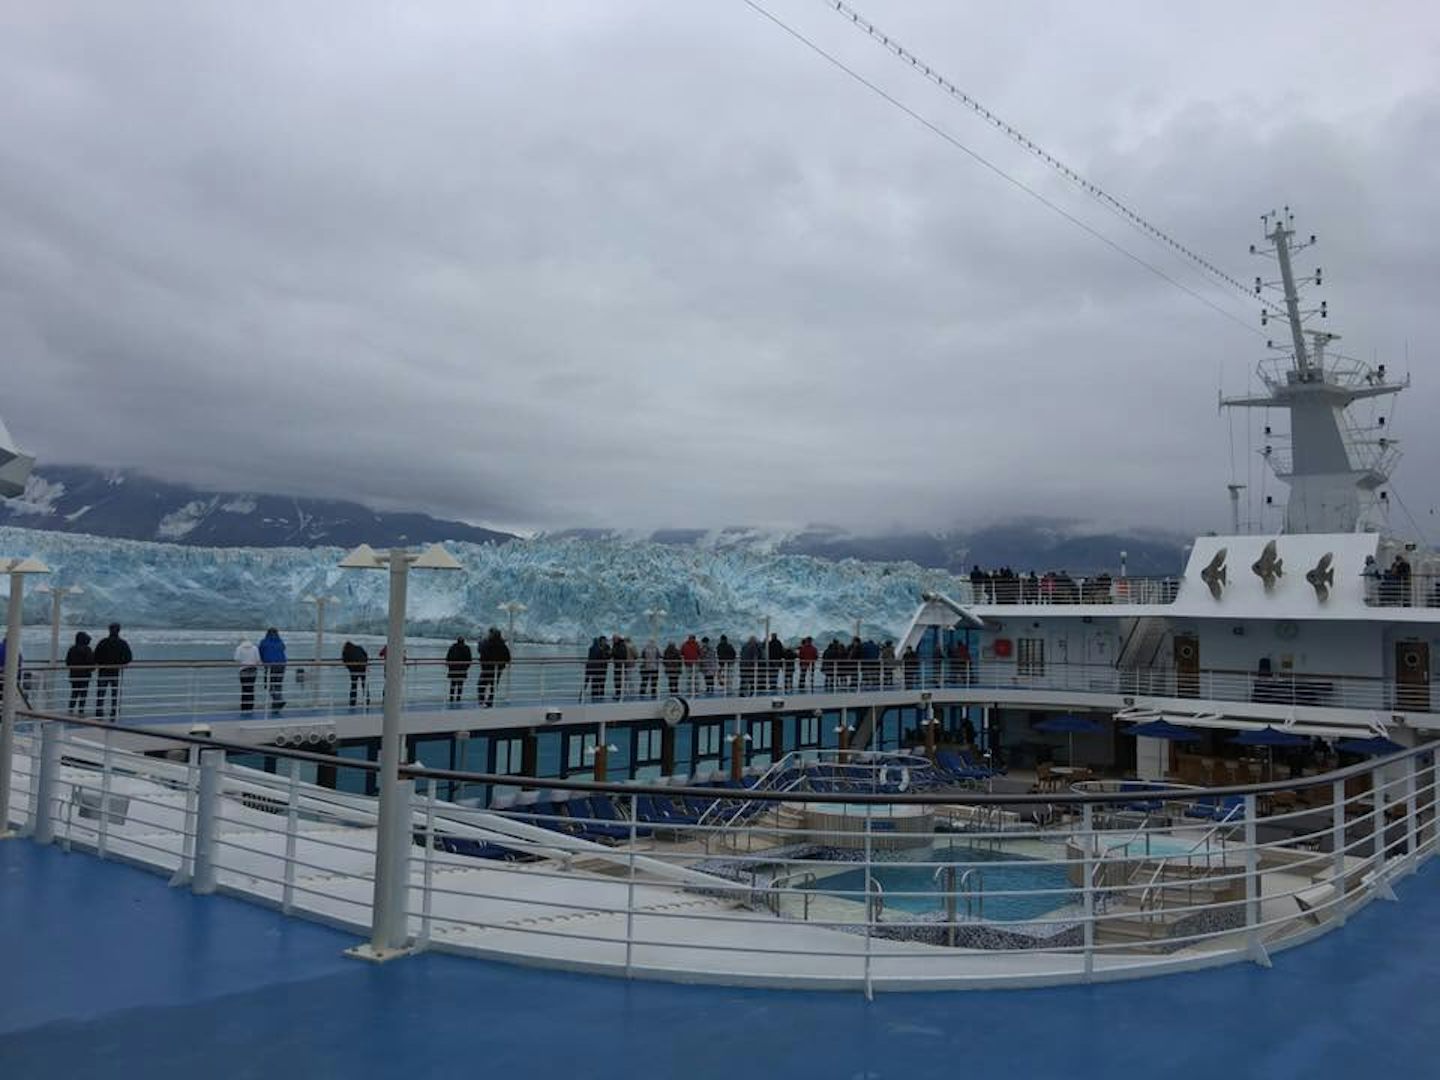 A view of the Regatta deck and the Hubbard glacier.